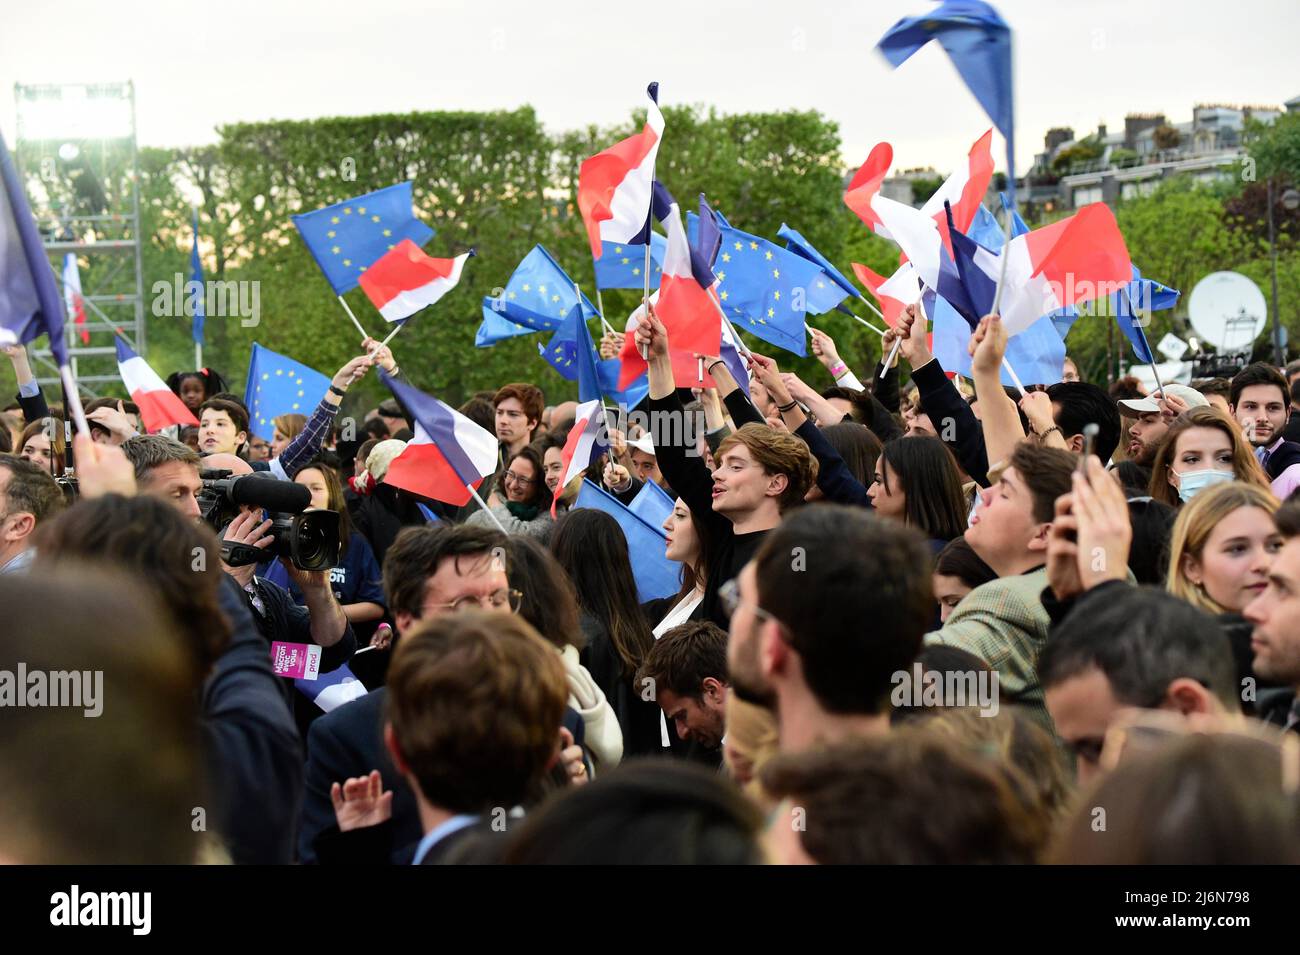 Emmanuel Macron wurde für eine zweite Amtszeit als französischer Präsident gewählt. Feier seines Sieges am 24. April 2022 im Pariser Marschchamp. Stockfoto